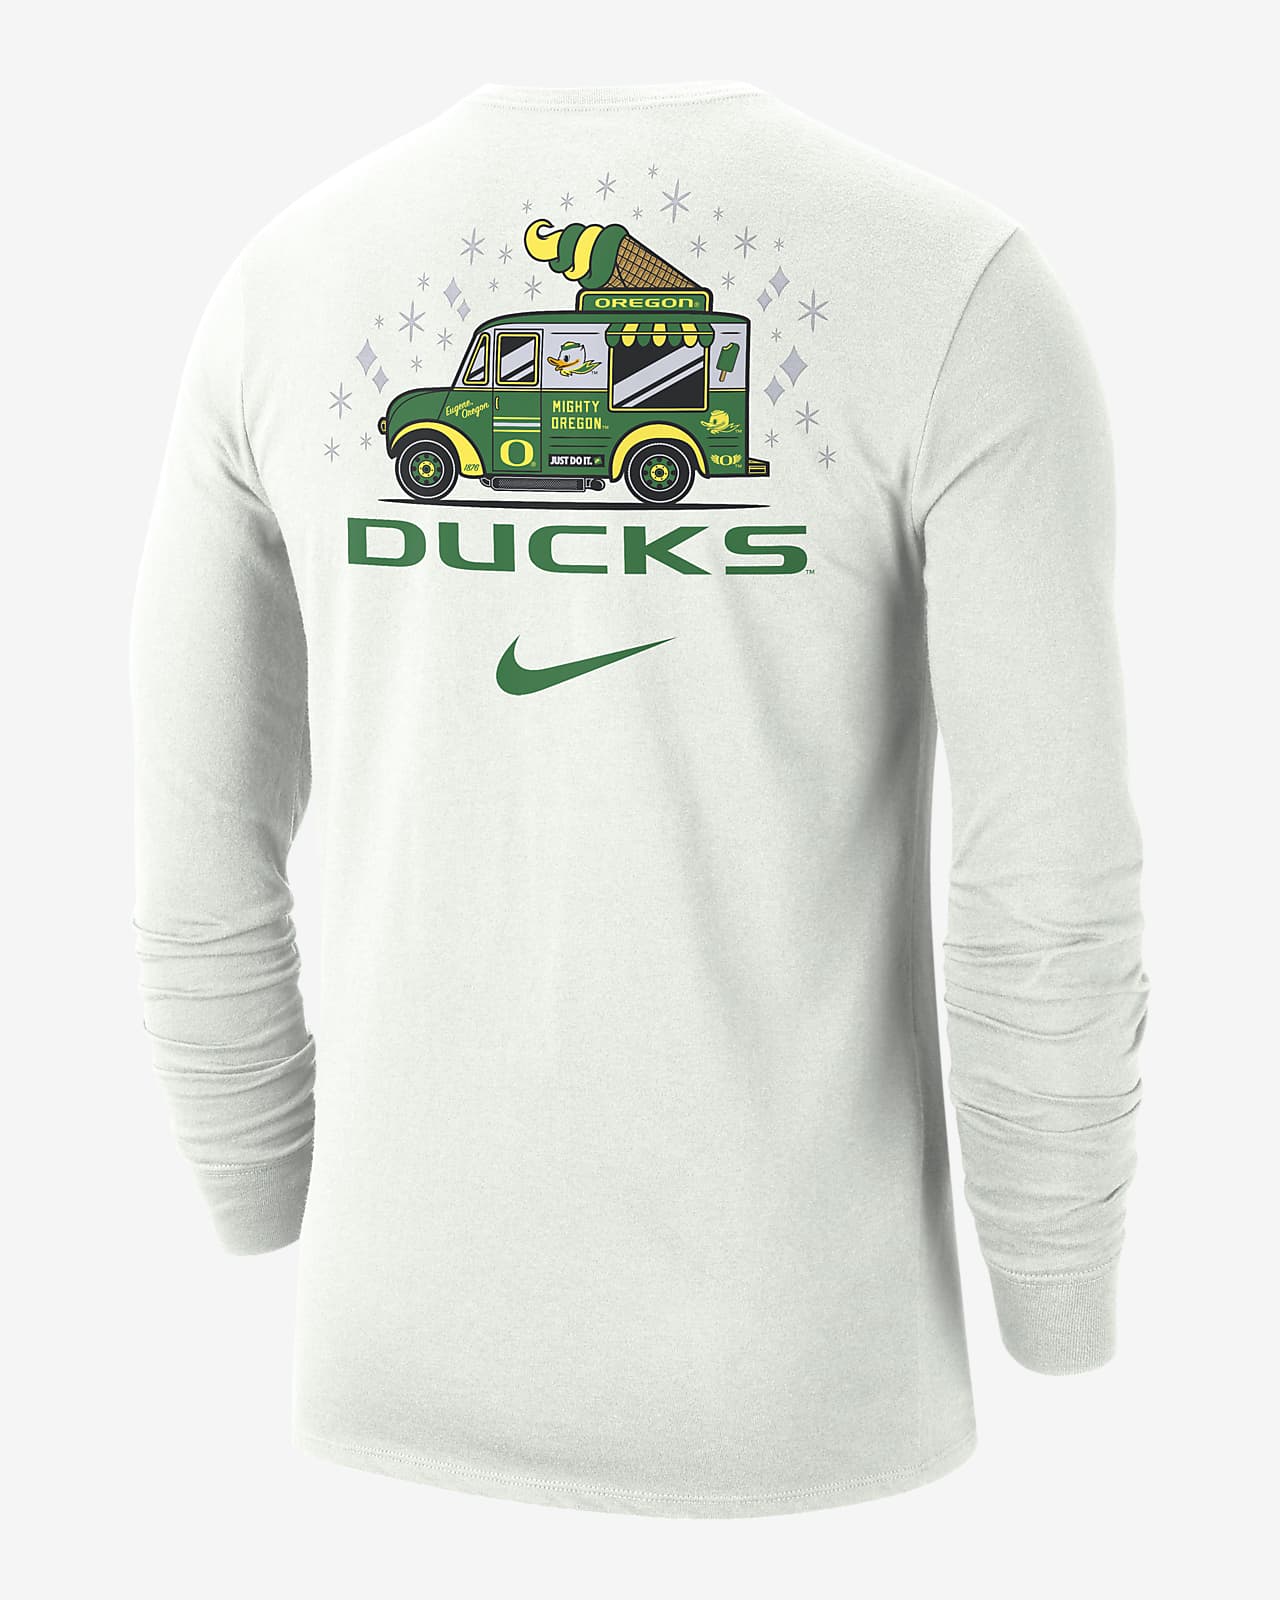 Anaheim Ducks Golf Shirt - Men's Large